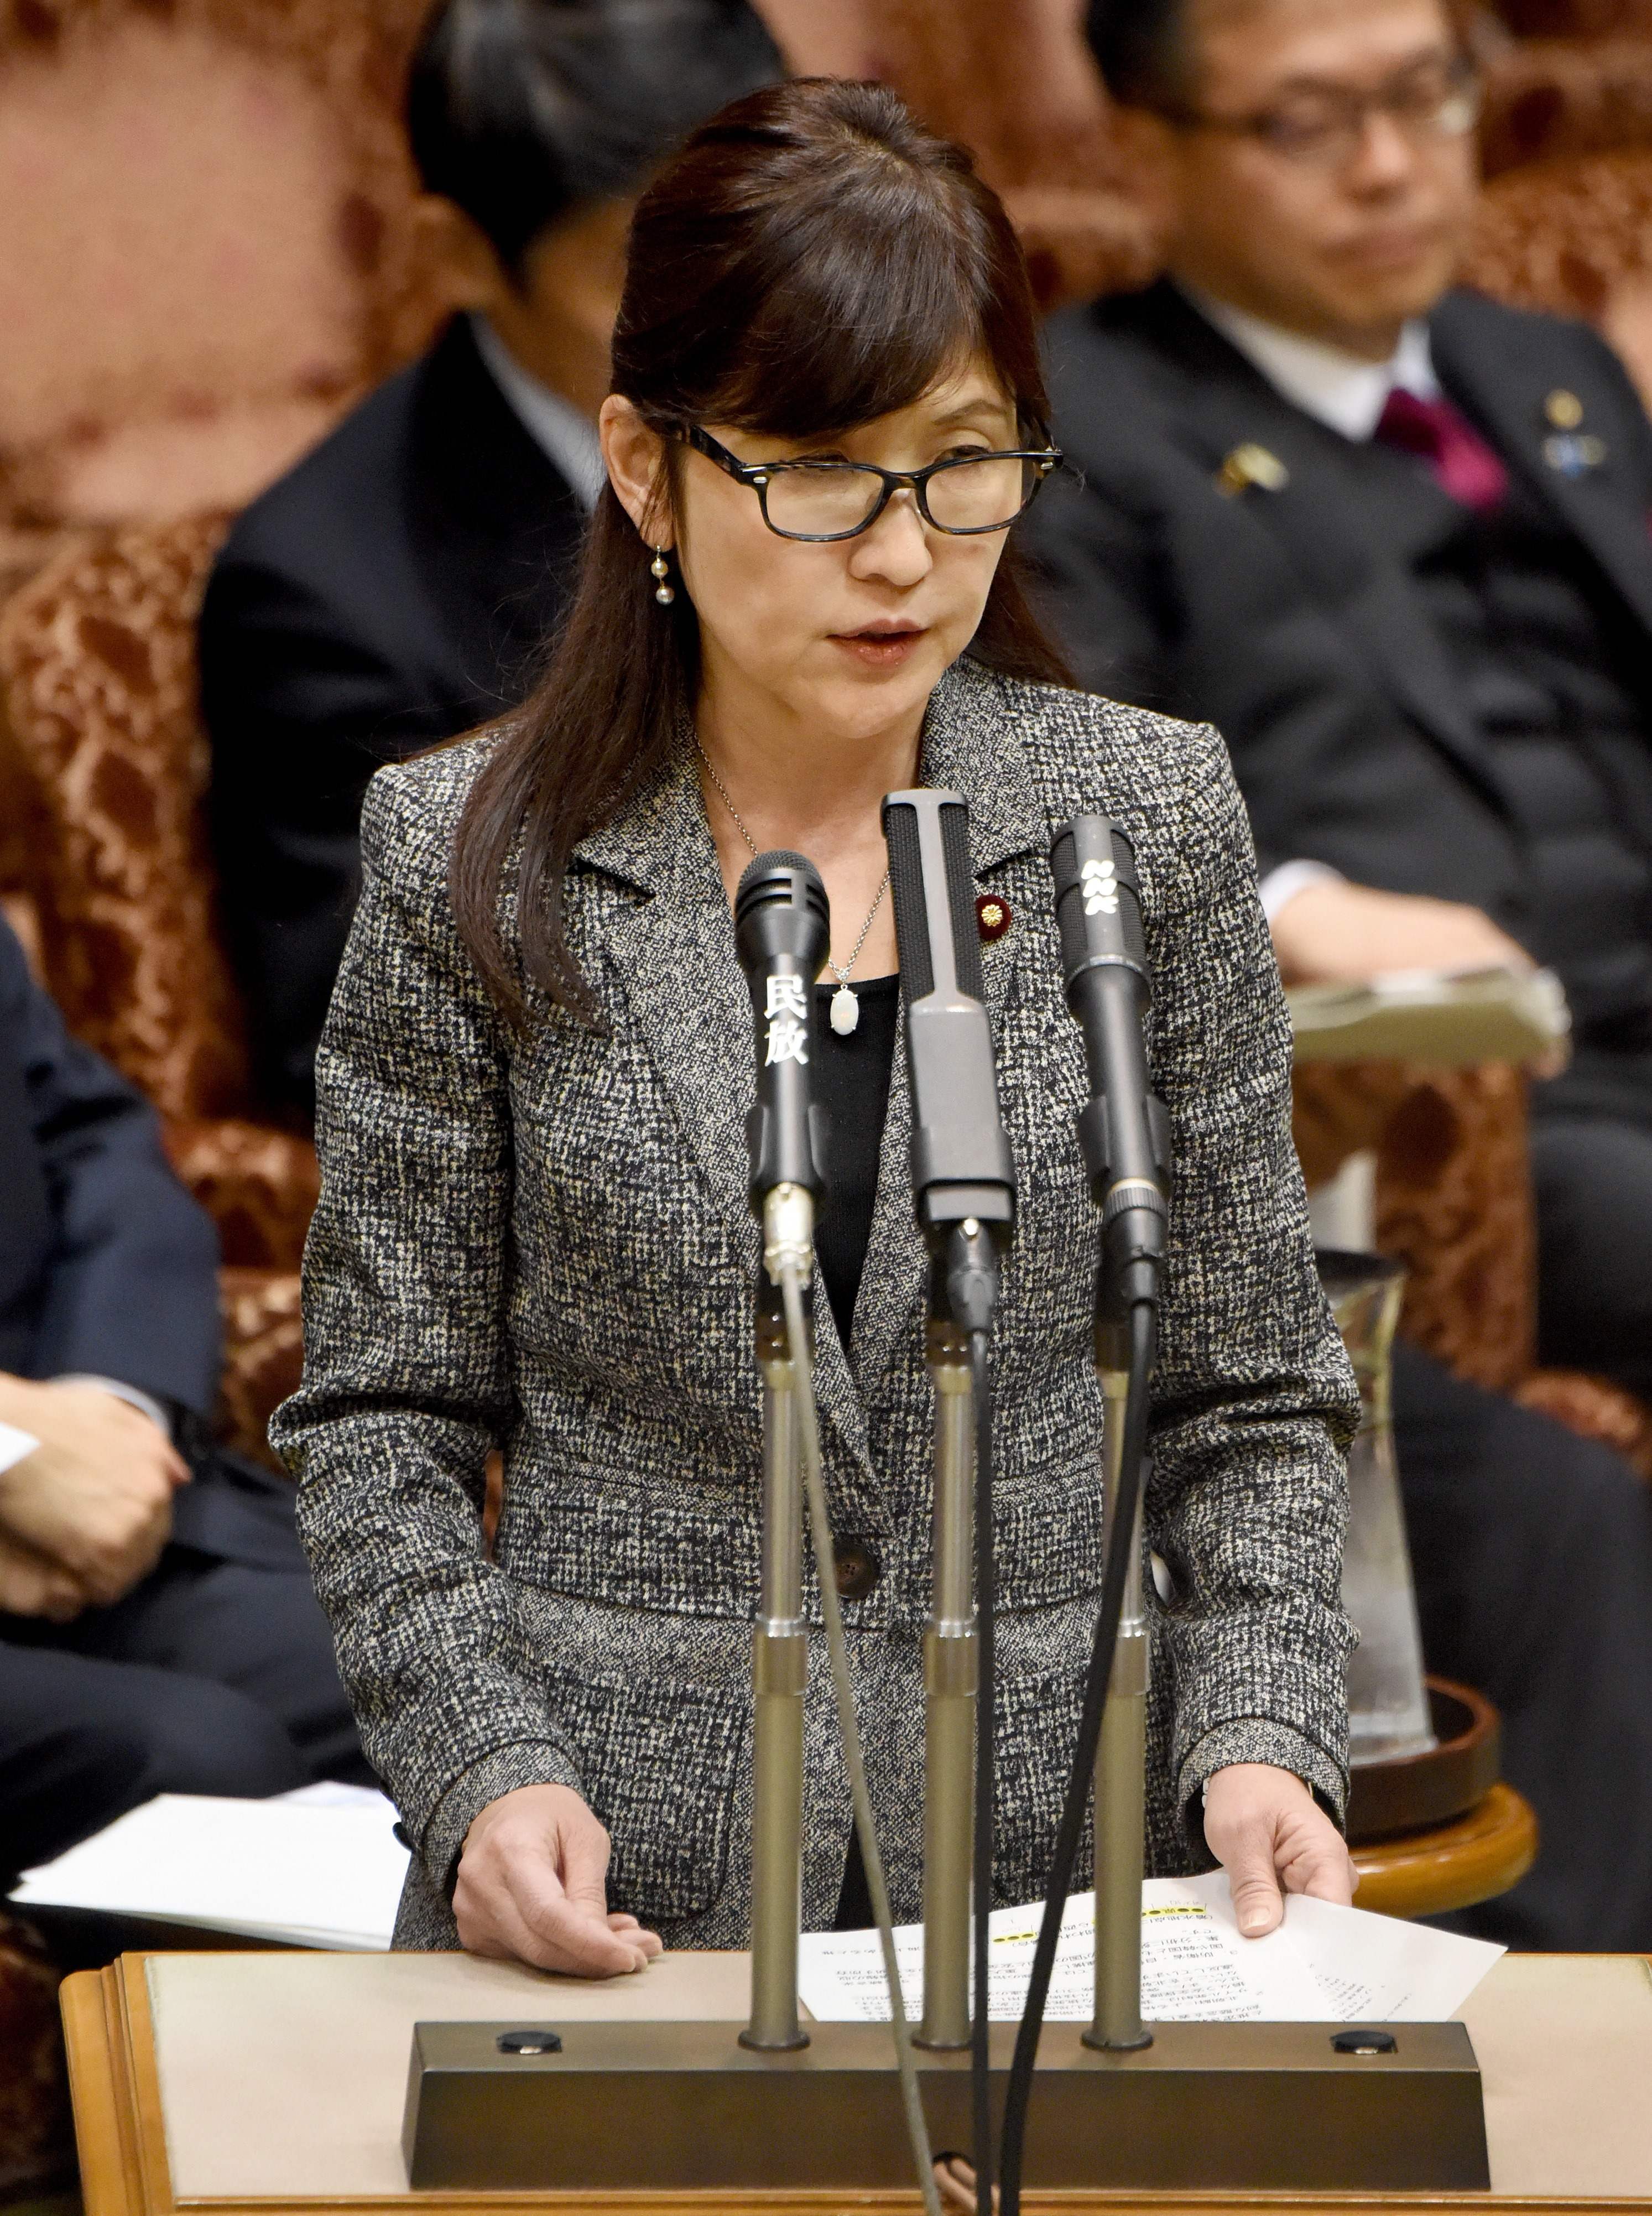 تومومى إينادا وزيرة الدفاع اليابانية  تلقى تصريحات عقب صواريخ كوريا الشمالية